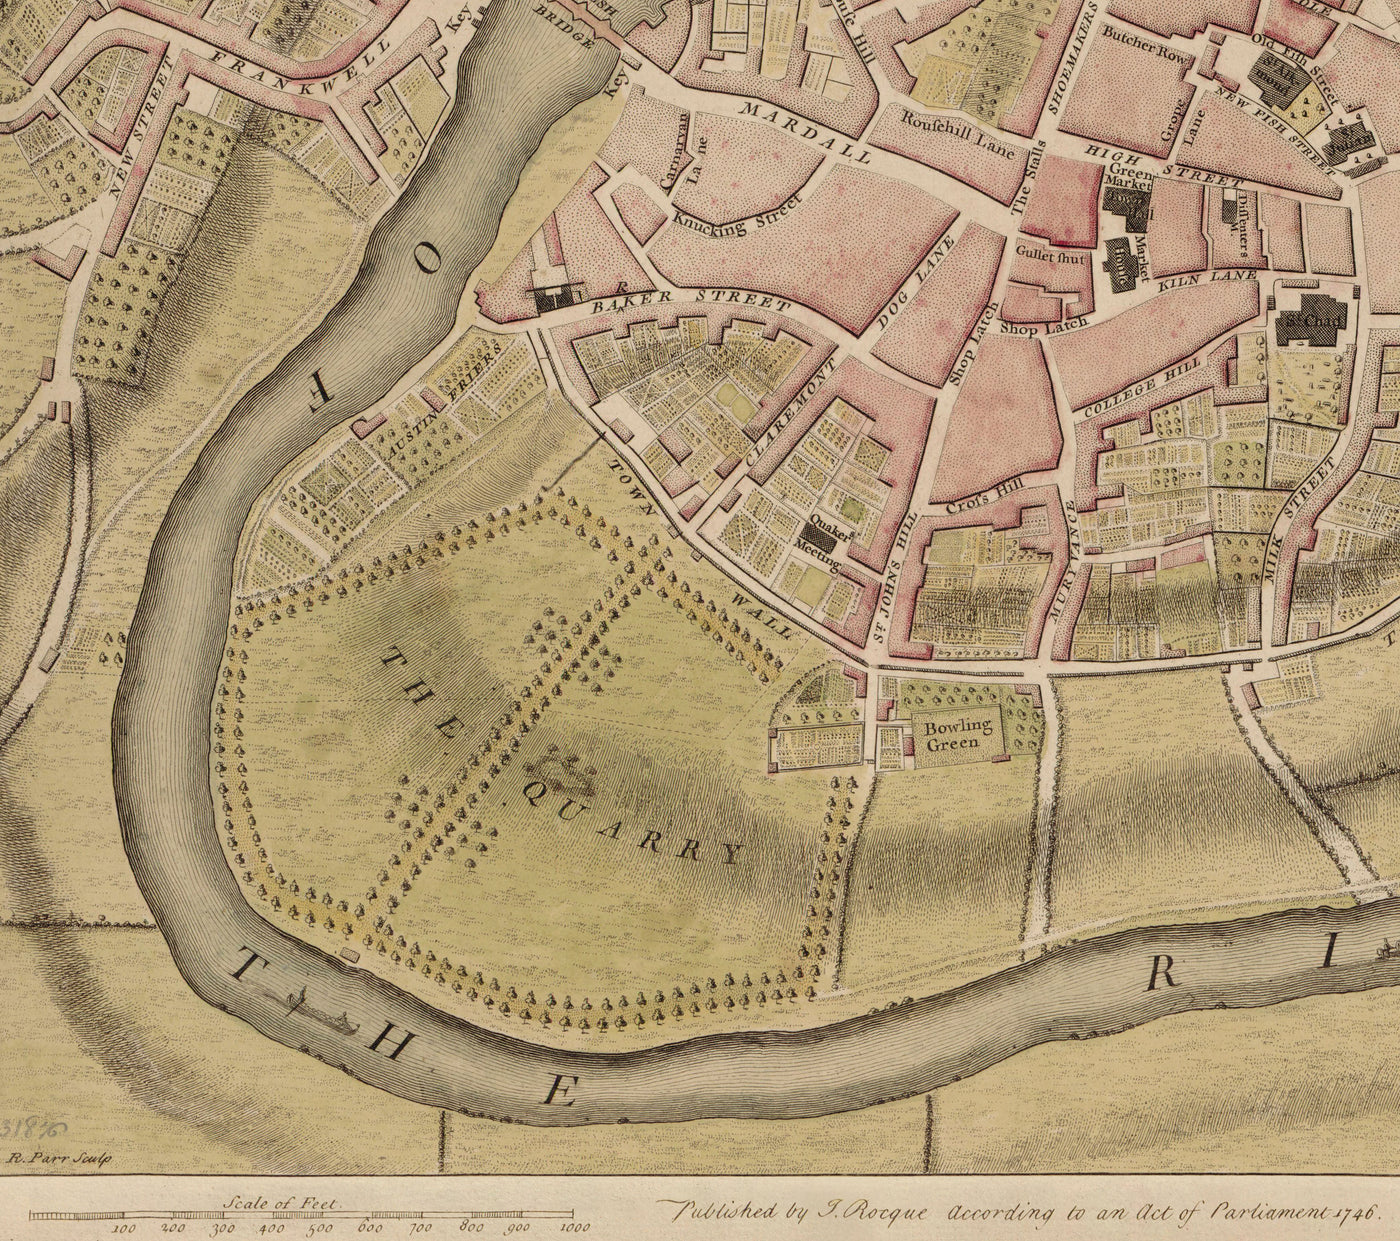 Alte Karte von Shrewsbury im Jahr 1746 von John Rocque - Fluss Severn, Frankwell, Welsh Bridge, Stone Bridge, Bowling Green